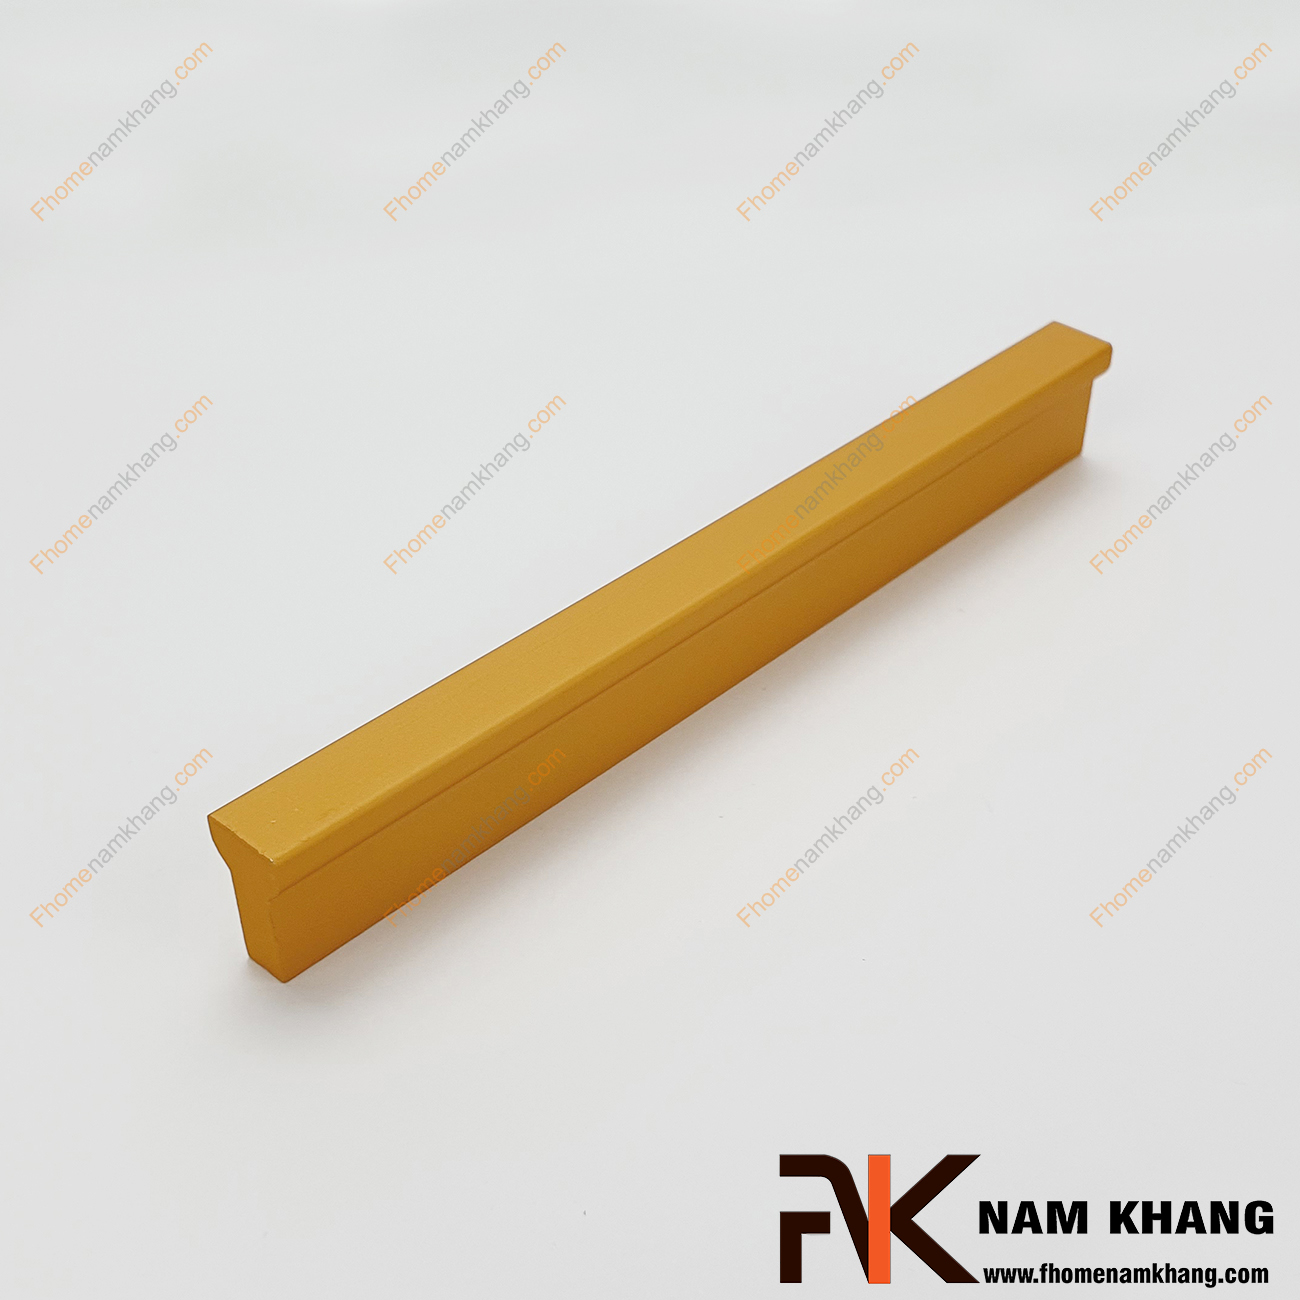 Tay nắm tủ dạng thanh dài nhiều kích thước màu vàng NK406-V2 có dạng thanh chữ T với góc cạnh vuông được xử lý gọn gàng. Sản phẩm được sử dụng công nghệ kỹ thuật cao, NK406 mang đến sự thanh lịch và đẳng cấp cho một sản phẩm chất lượng.